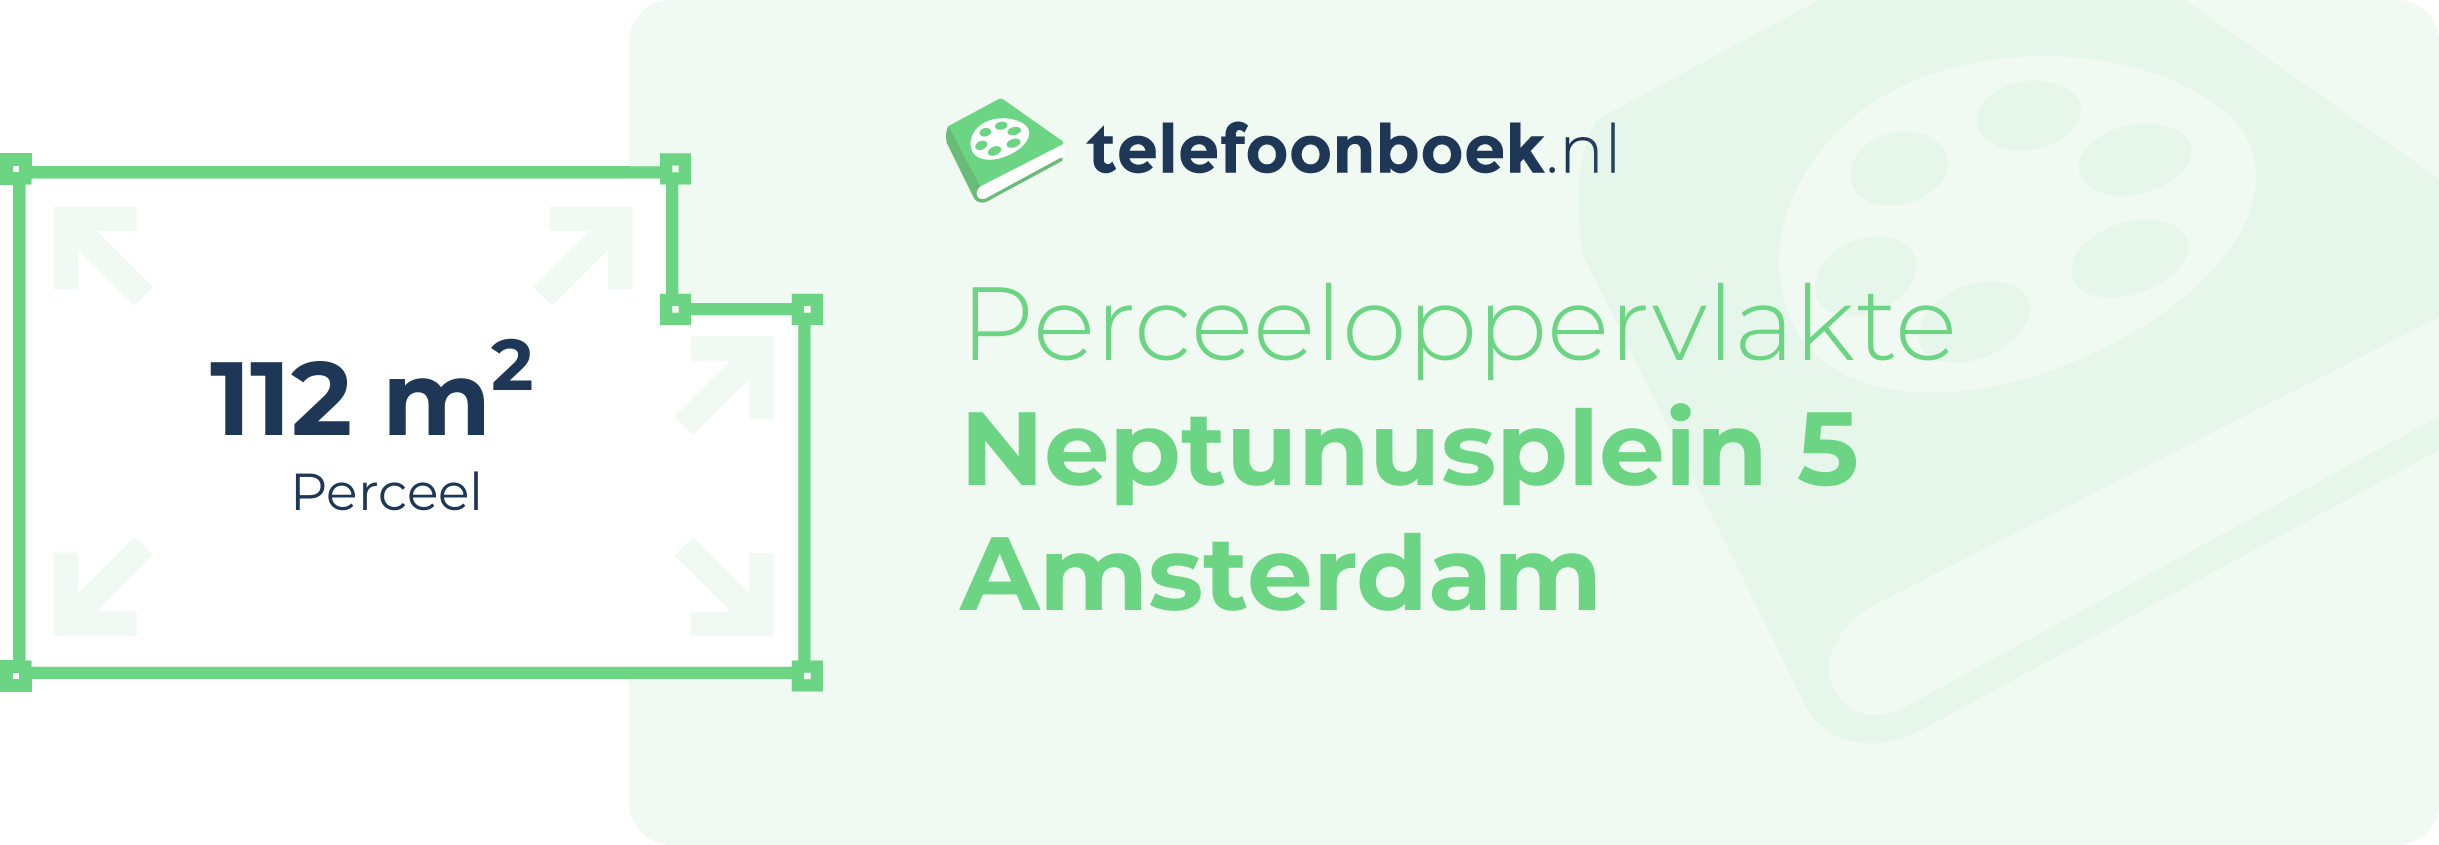 Perceeloppervlakte Neptunusplein 5 Amsterdam